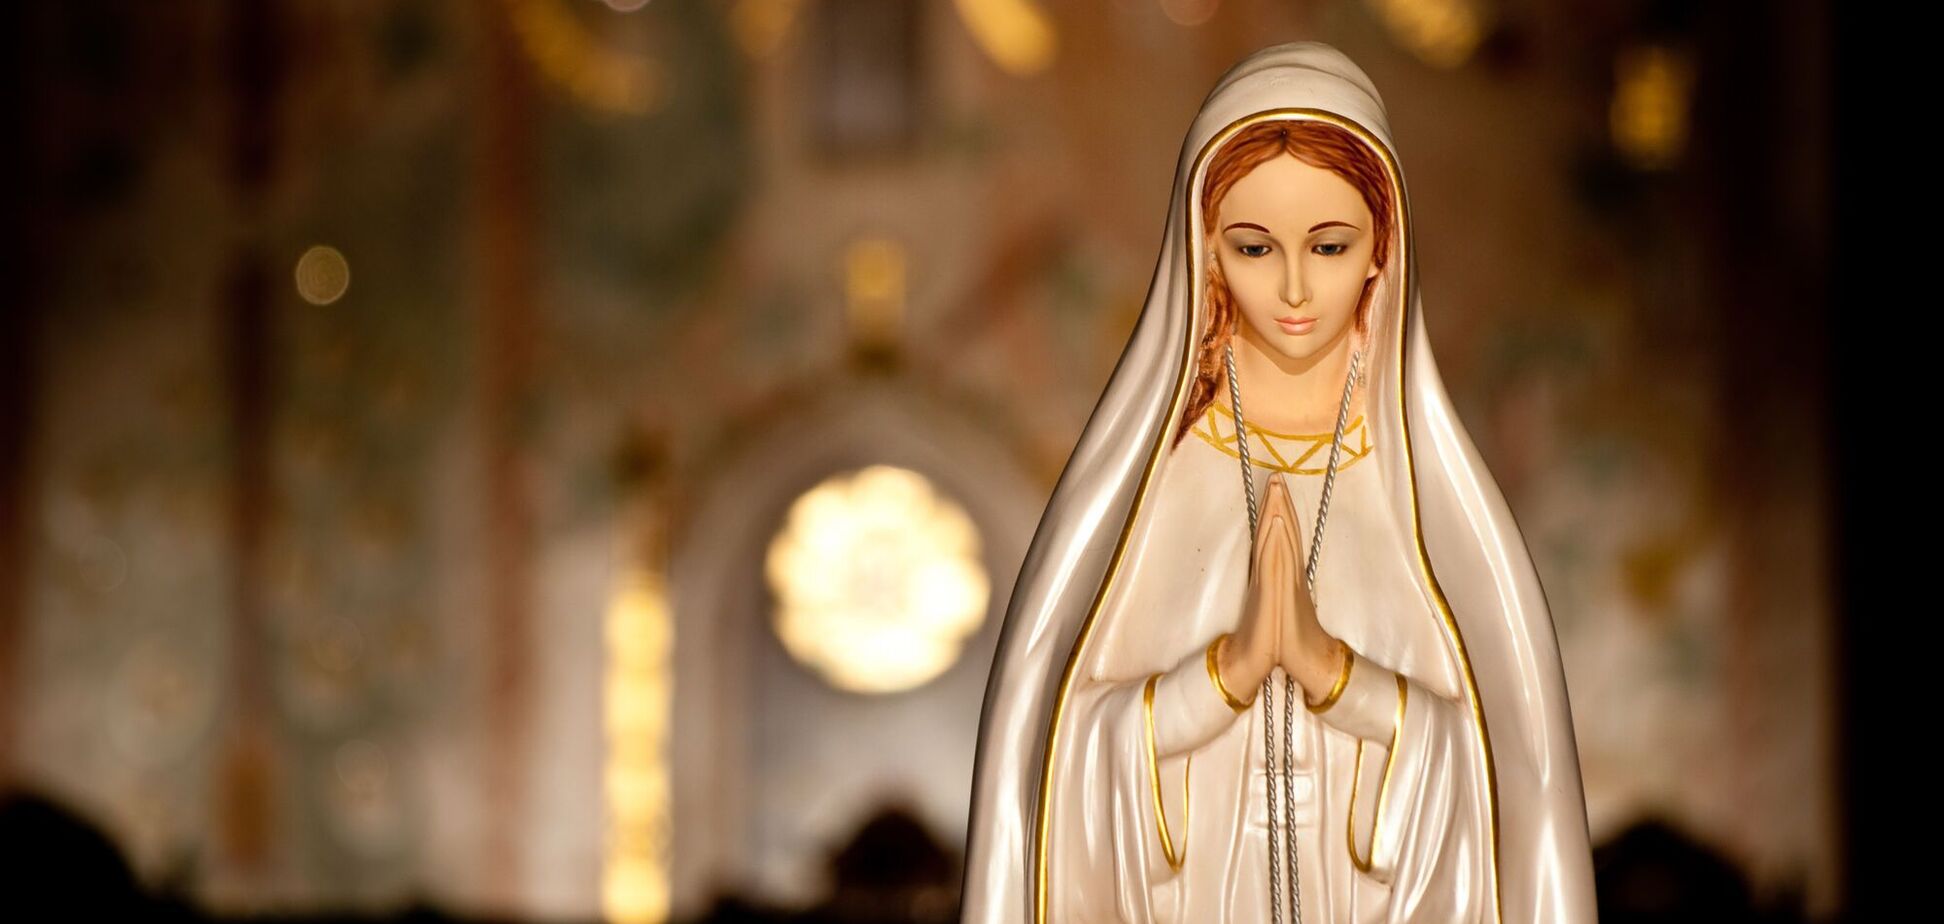 День непорочного зачатия Девы Марии католики празднуют 8 декабря